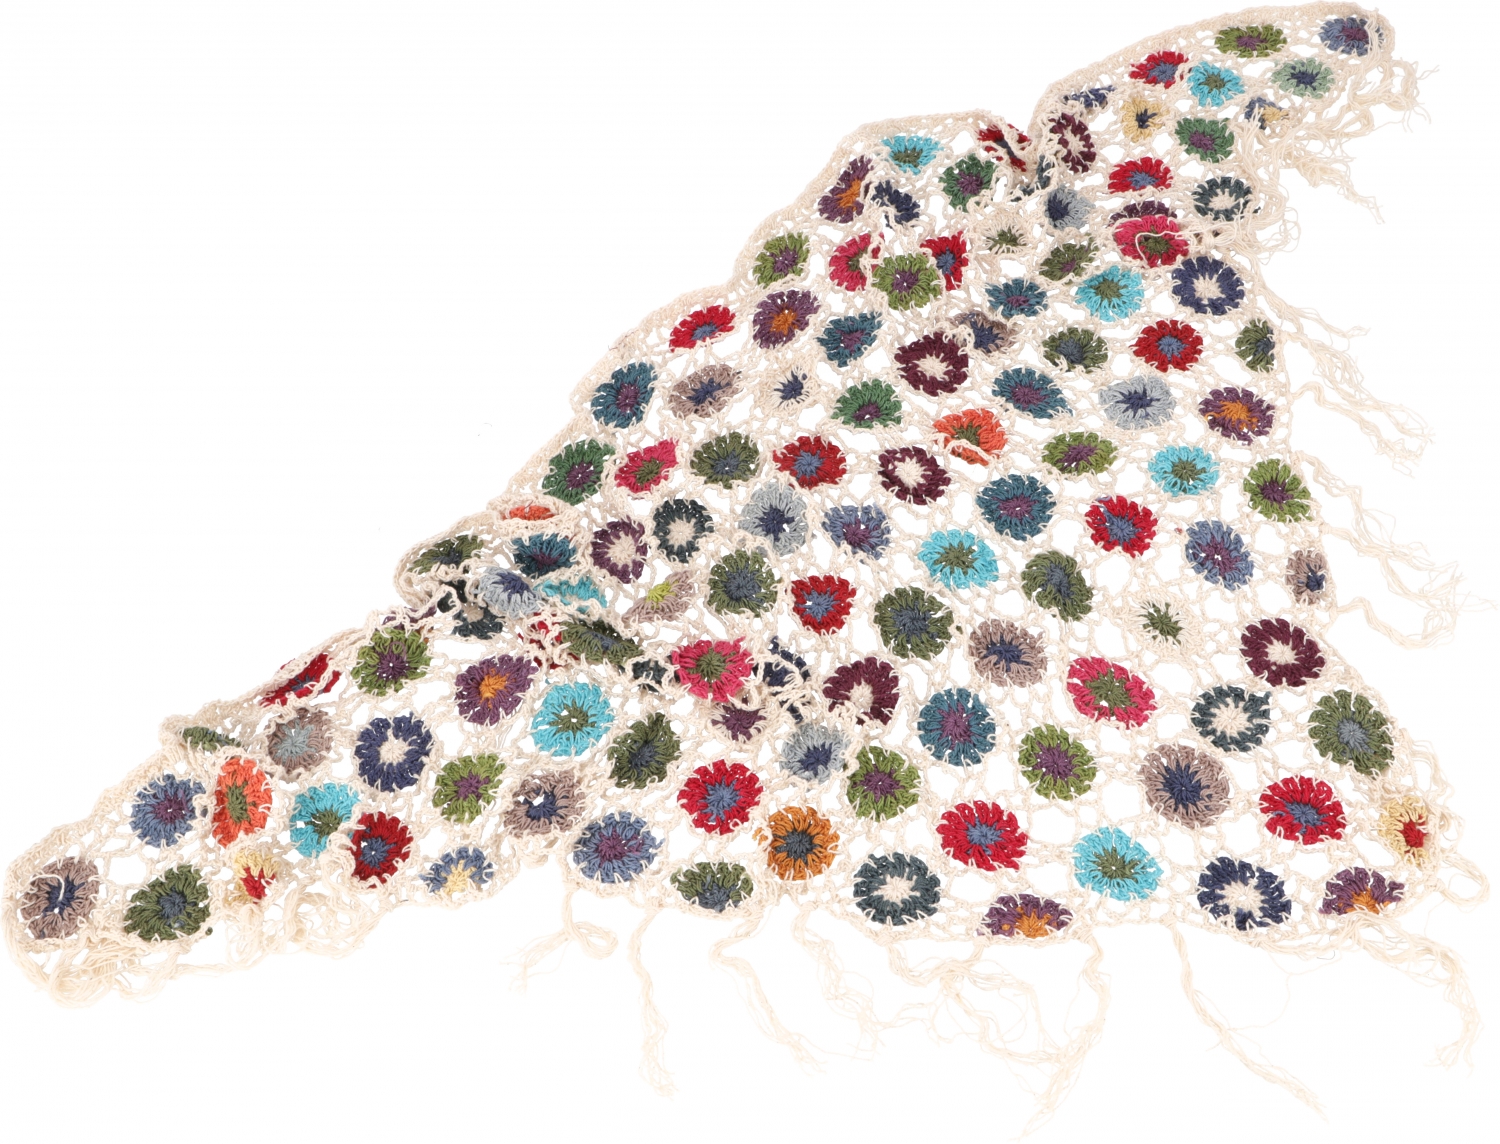 Gehaakte sjaal met bloemen katoen roomwit